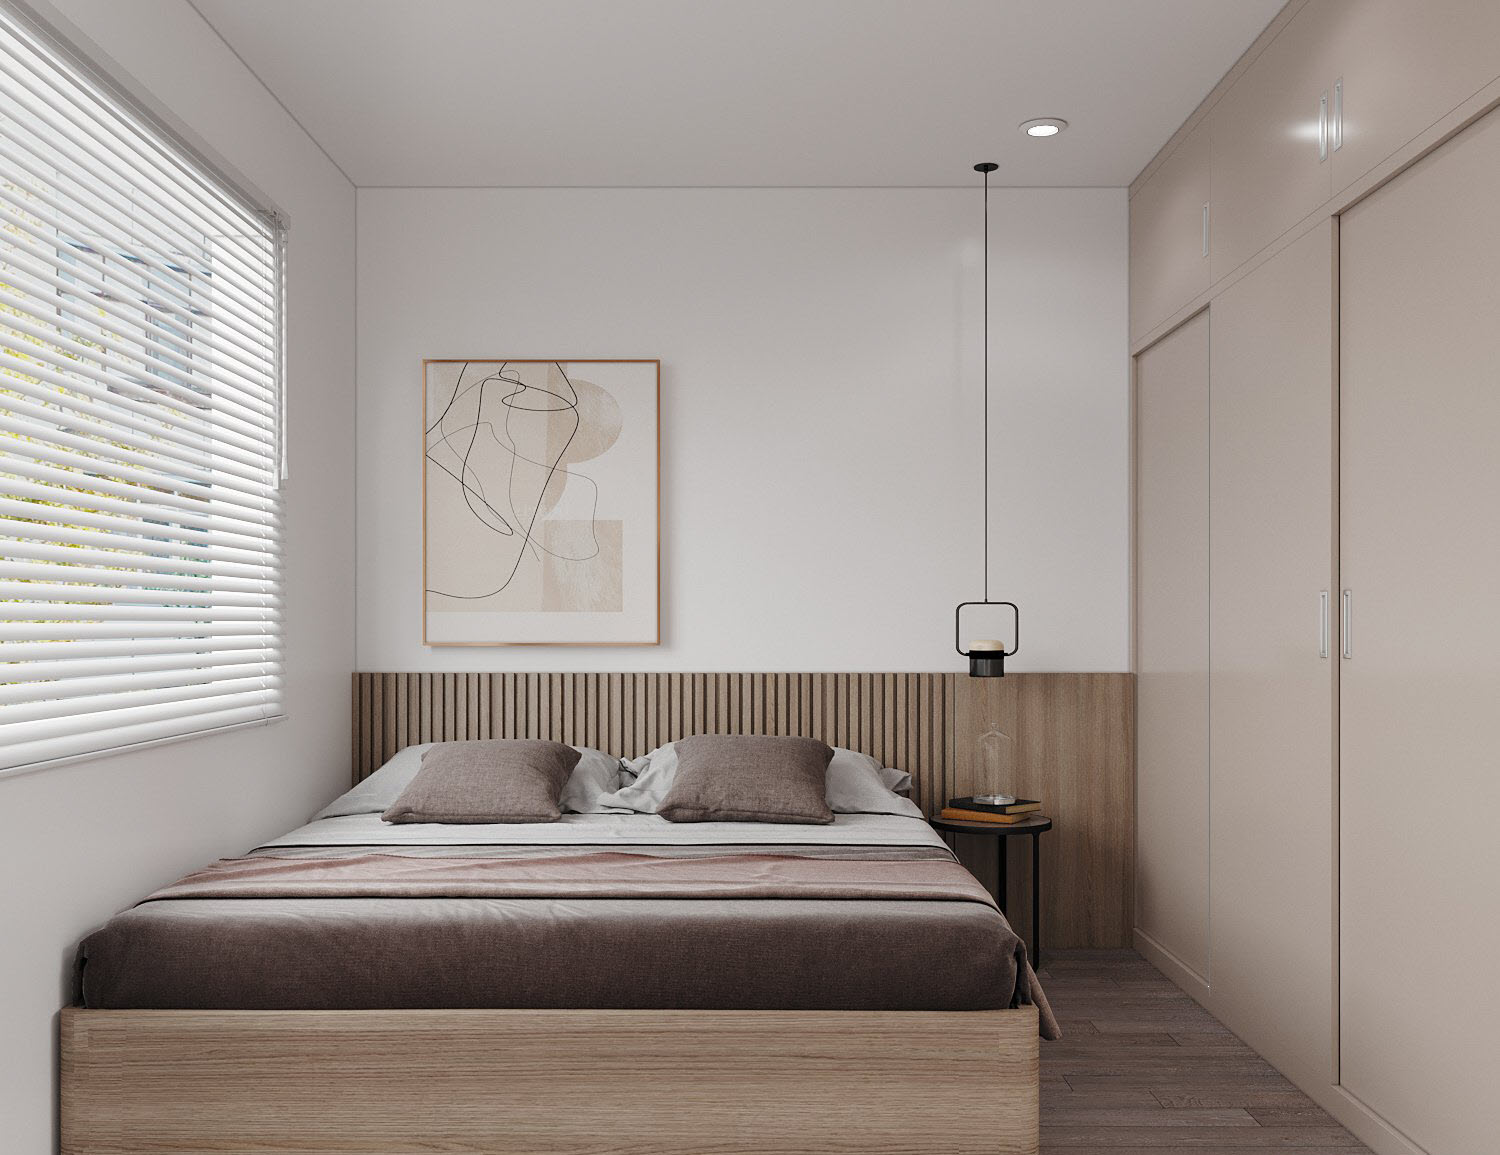 Phòng ngủ thứ ba có diện tích và thiết kế nội thất tương tự. Tông màu trung tính nhã nhặn và lối bài trí nhẹ nhàng, tinh tế tạo nên sức hút cho căn phòng.